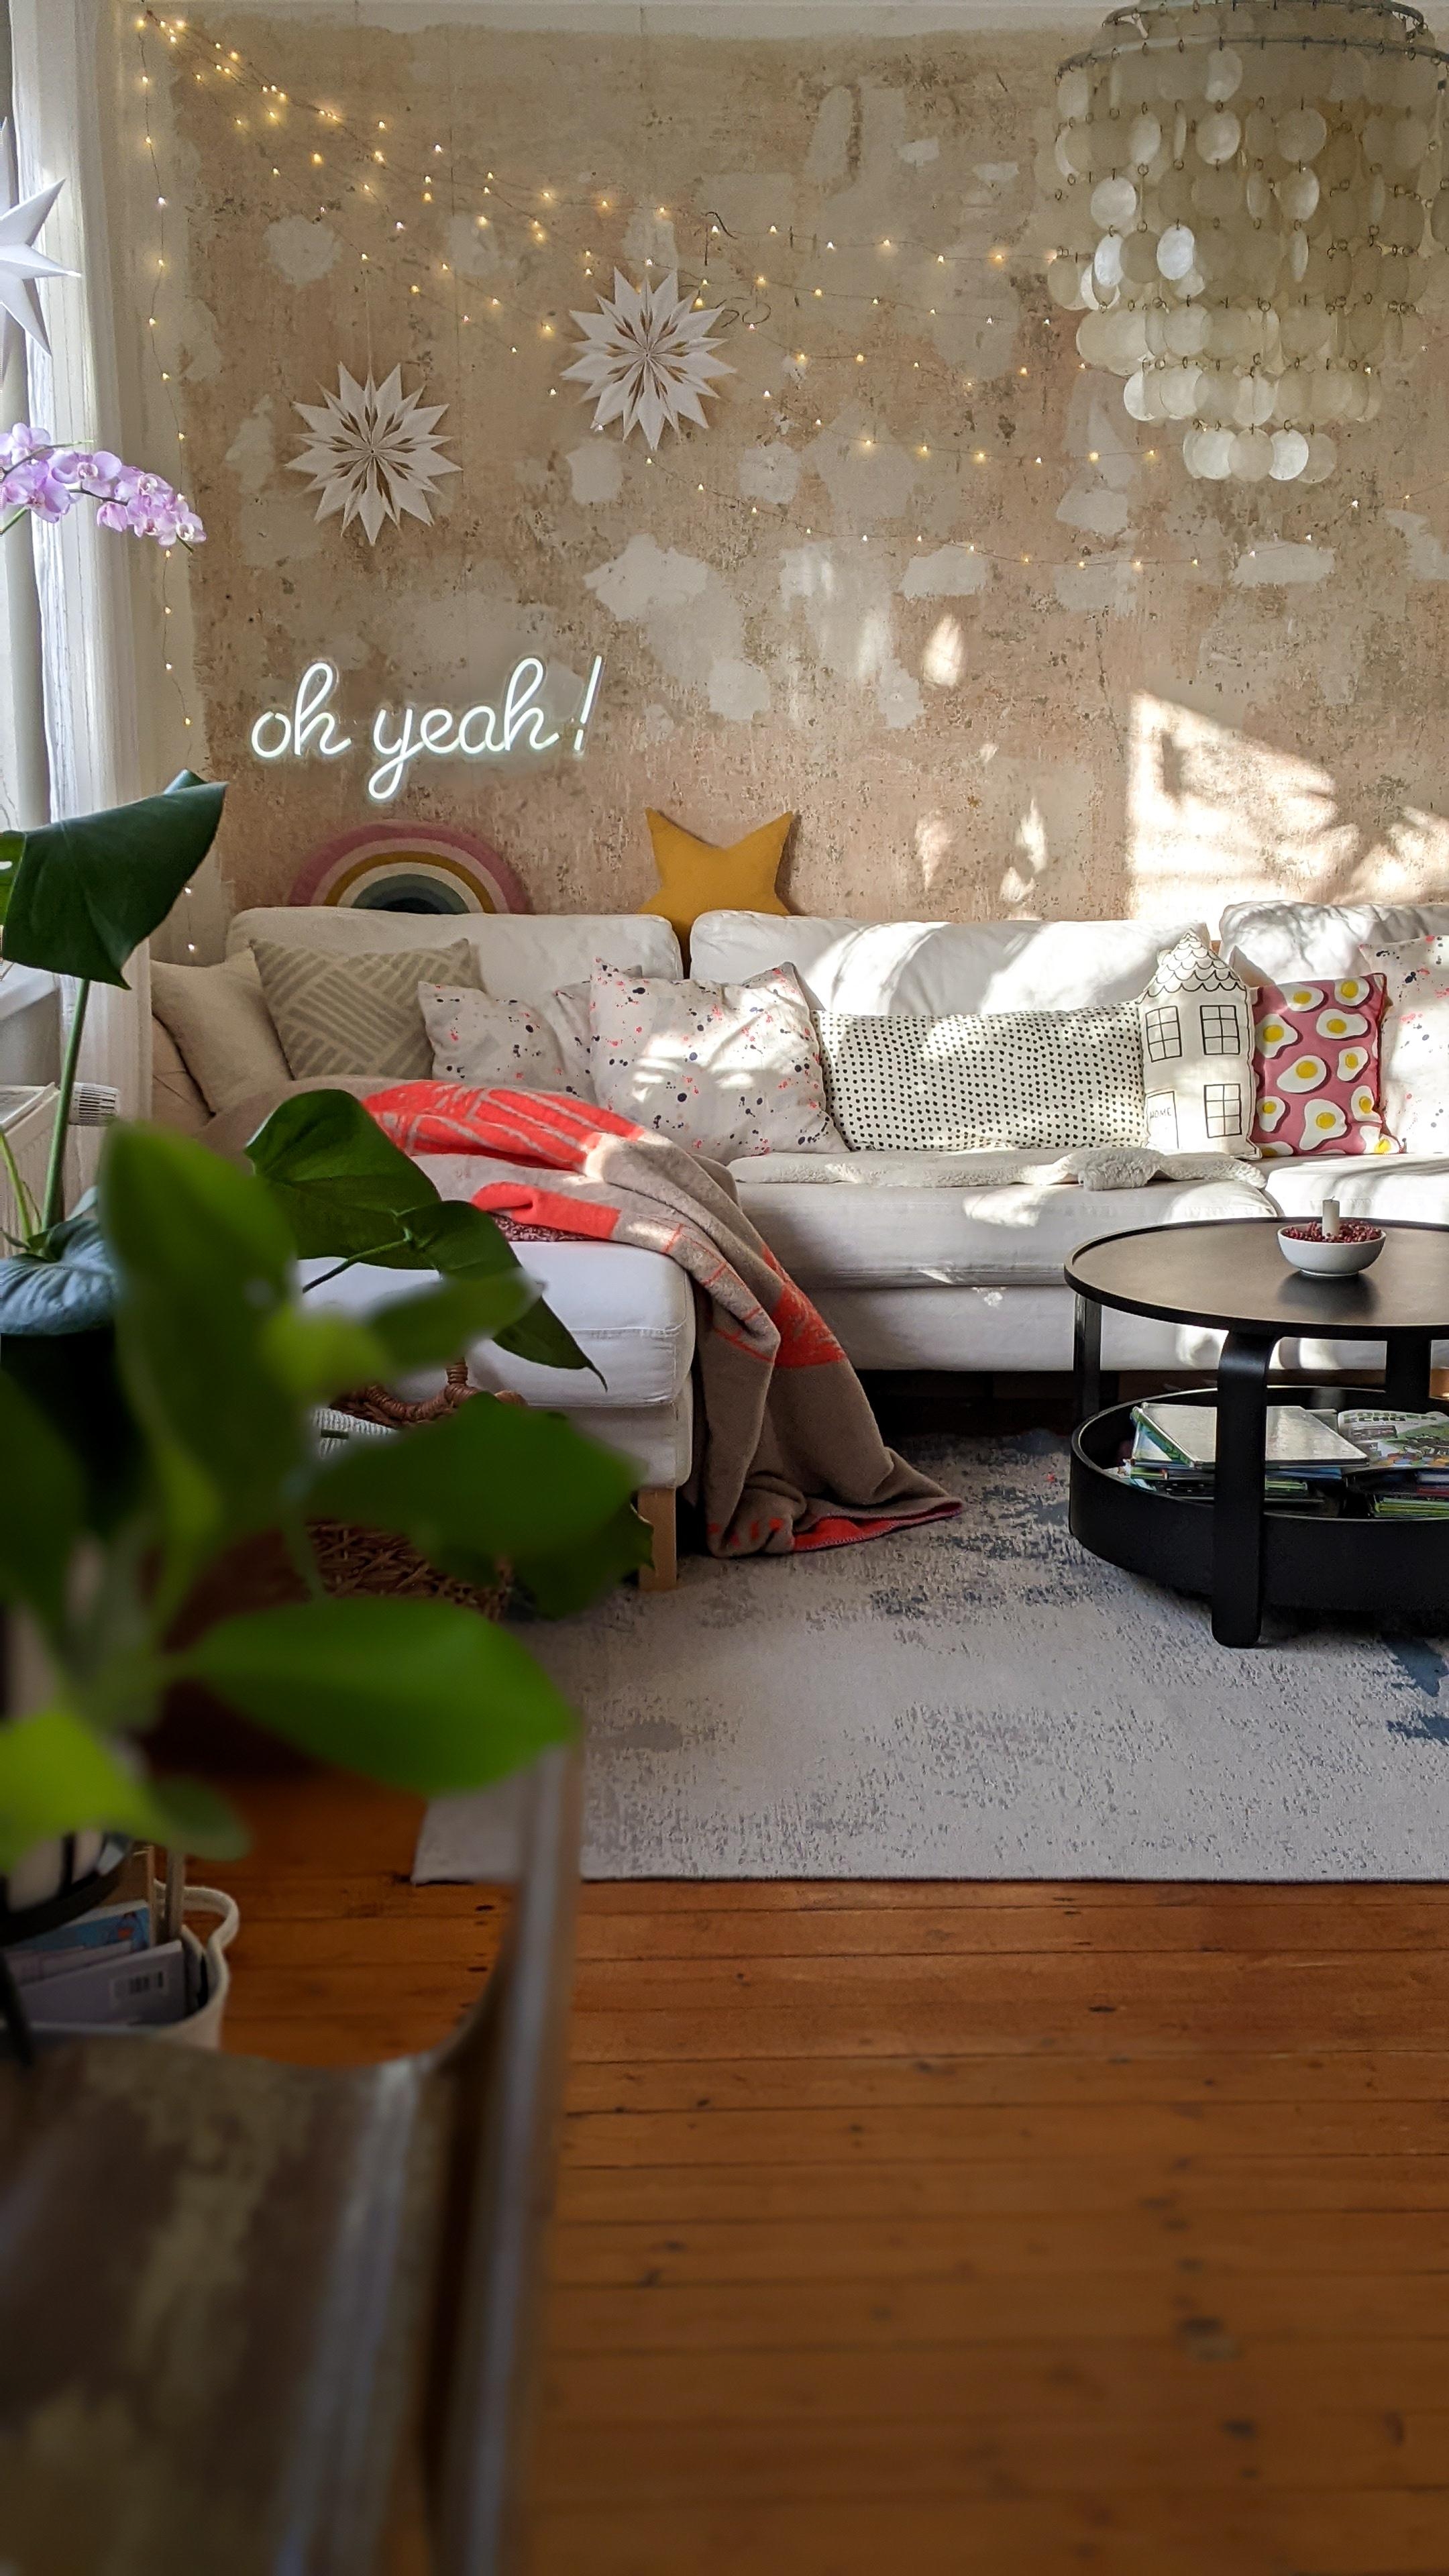 #wohnzimmer #couch #sonne #vintage #dekoideen #wandgestaltung 